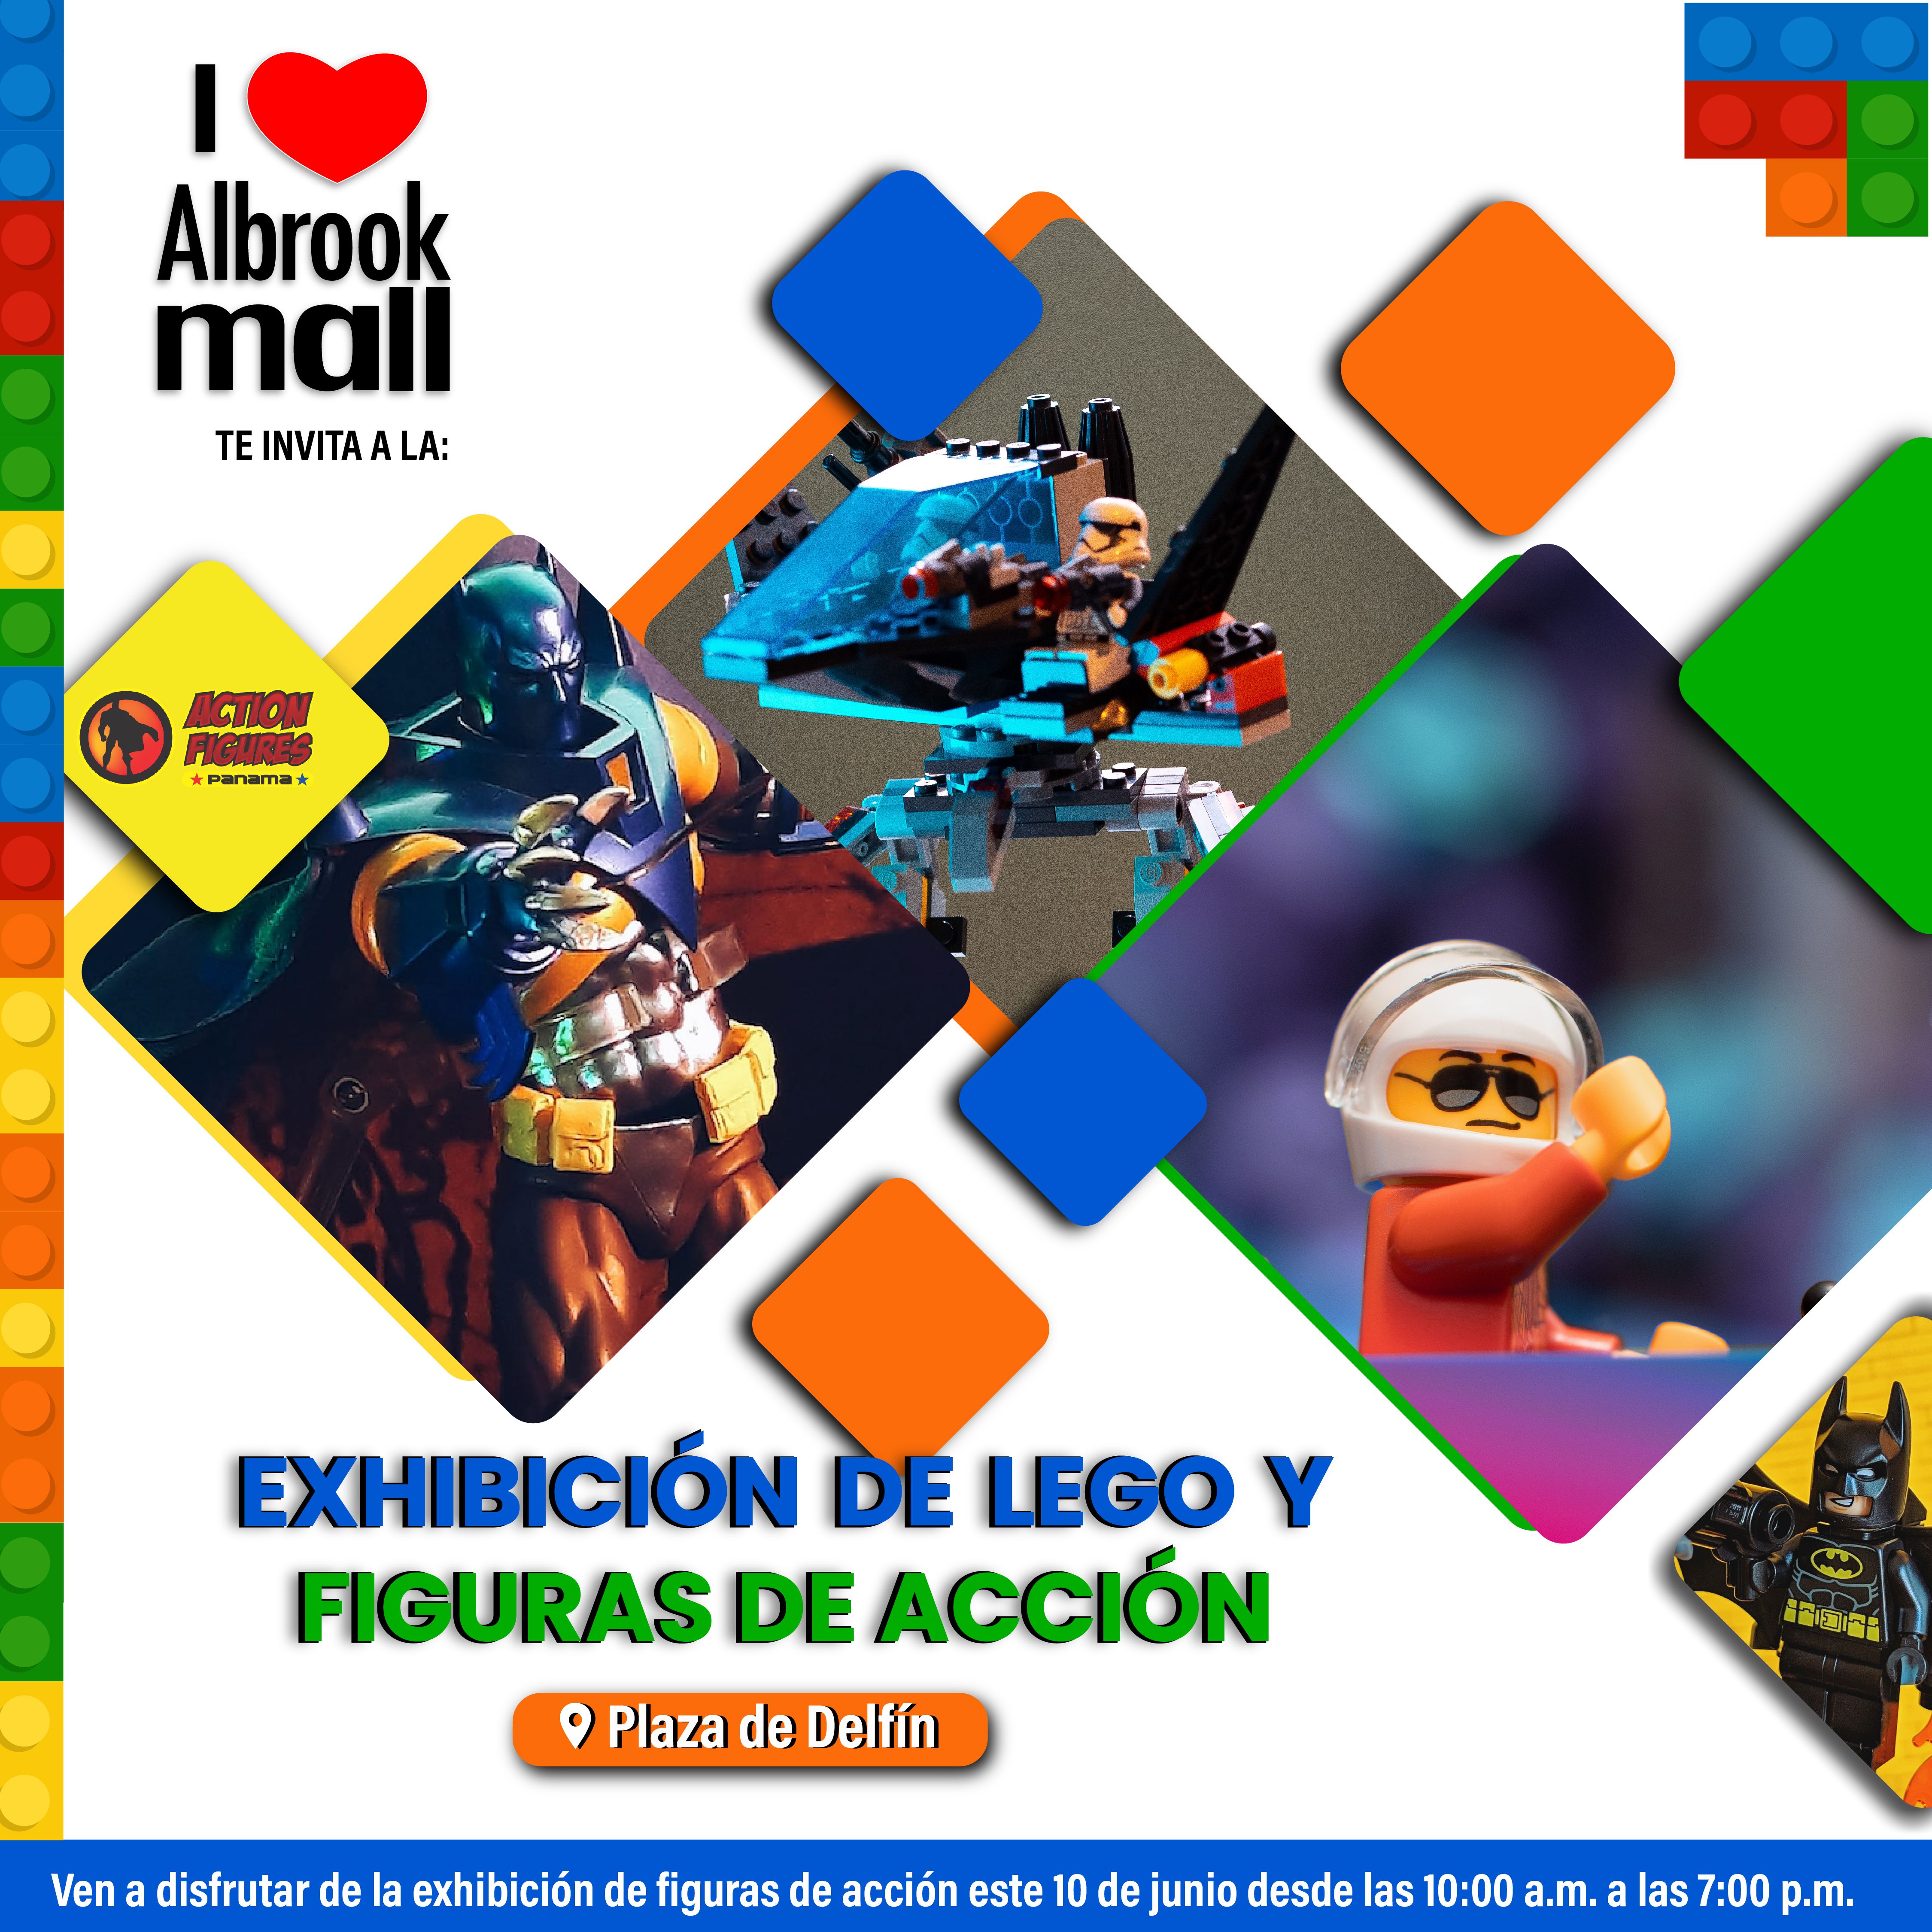 Exhibición de Lego y Figuras de Acción